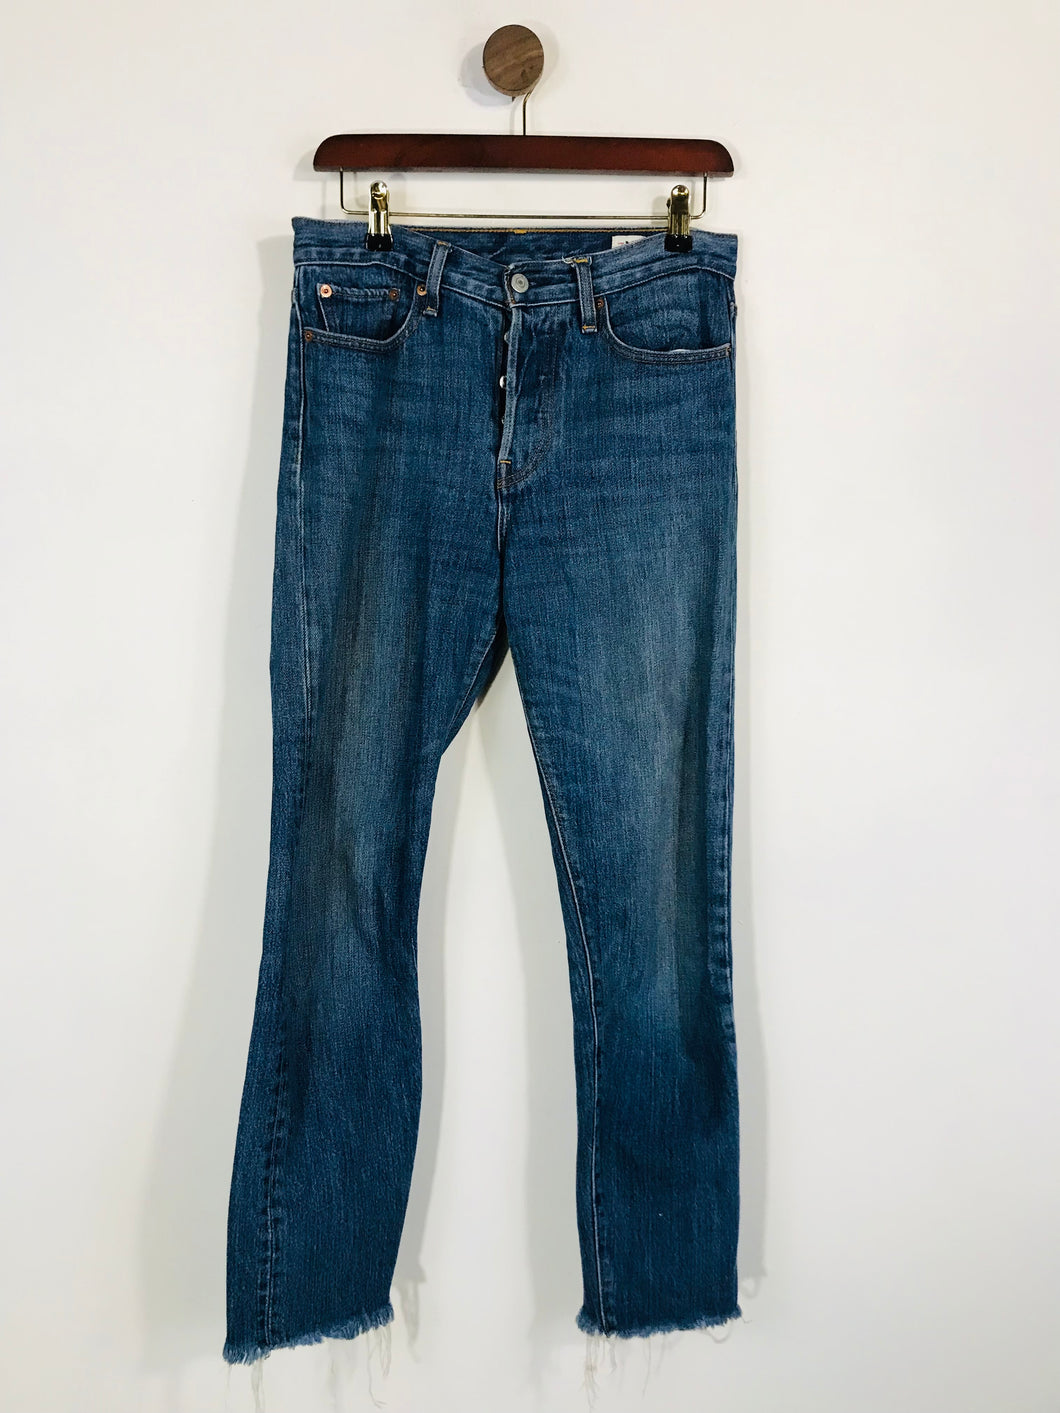 Levi’s Women's Crop Skinny Jeans | W27 UK8-10 | Blue